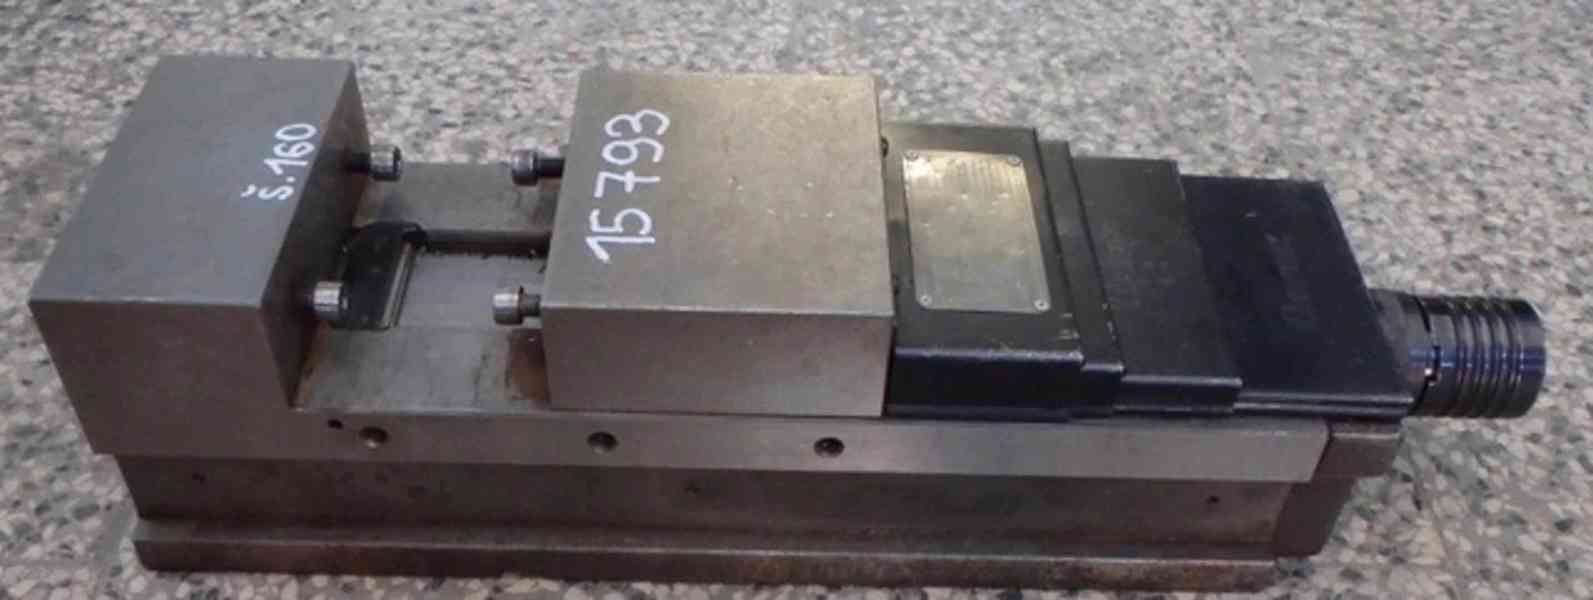 Hydraulický strojní svěrák CHV 160 V (9713.)  - foto 1